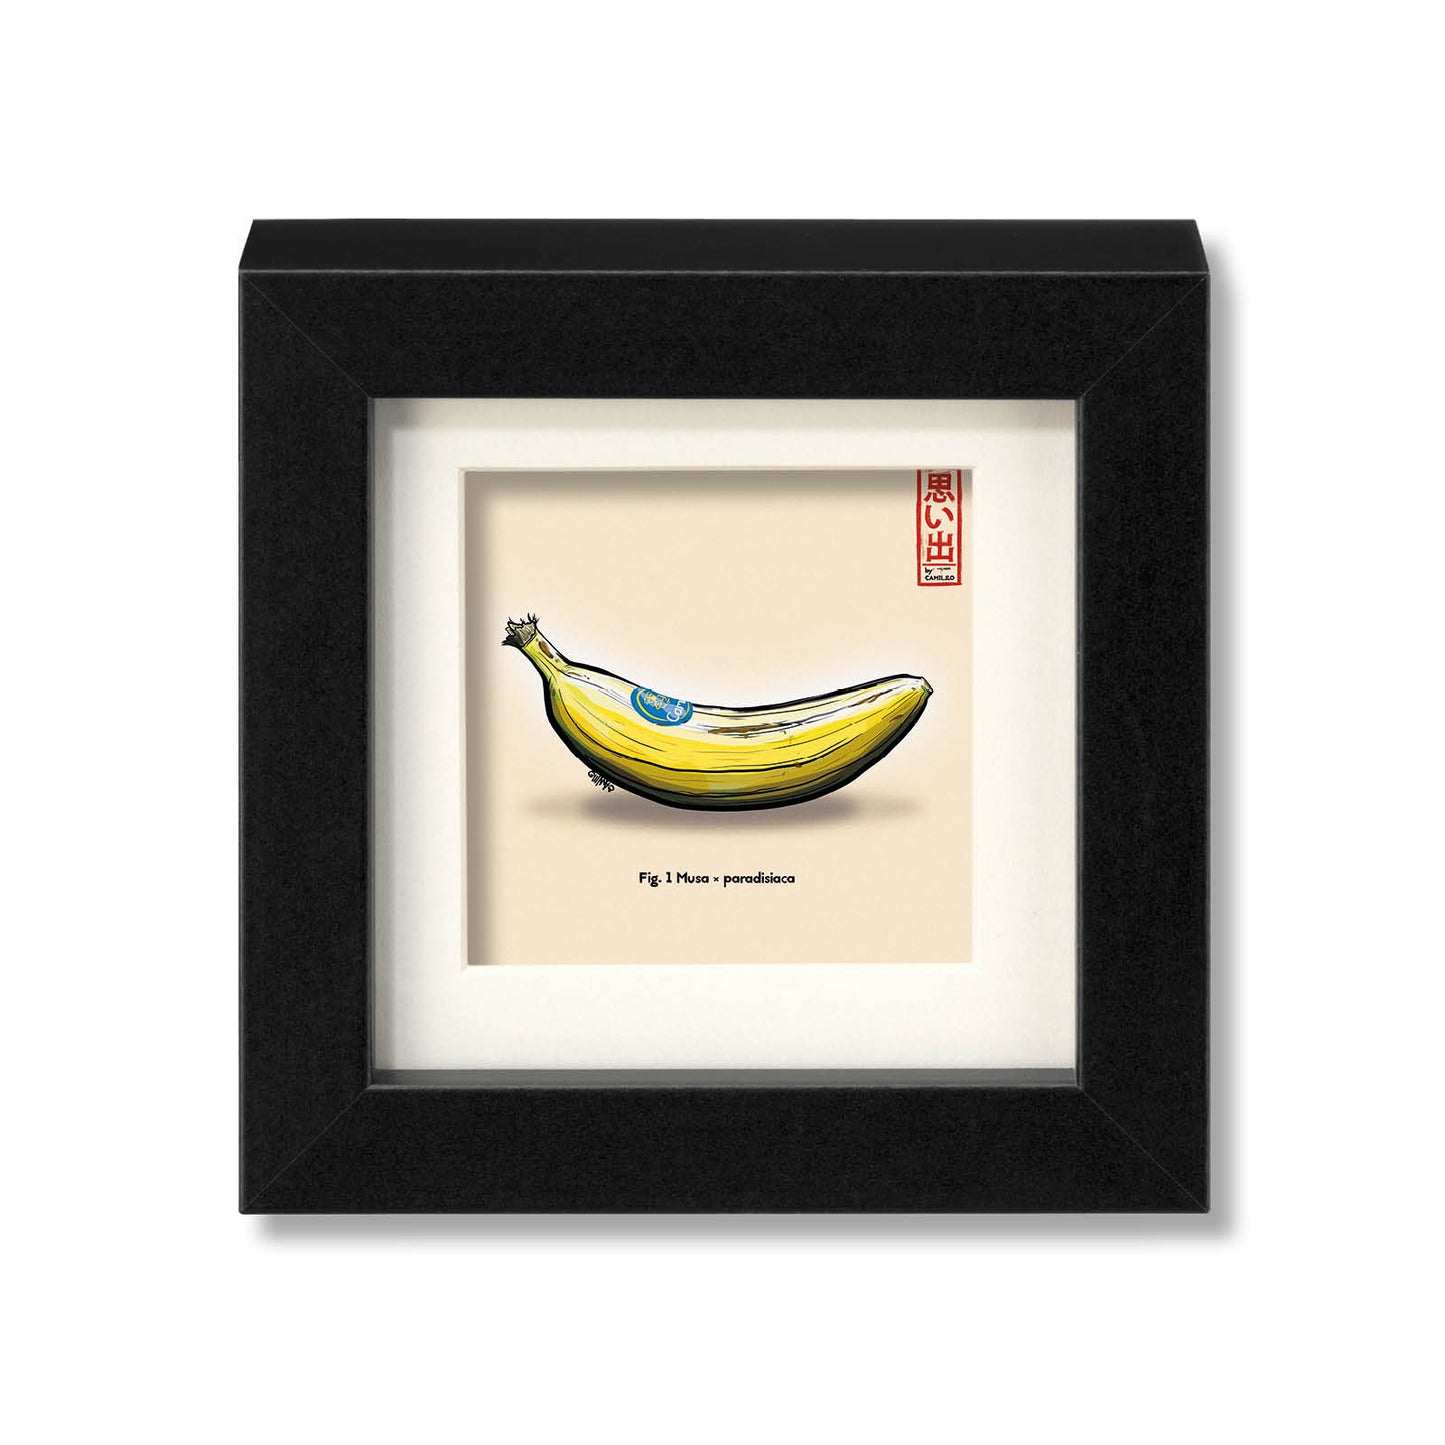 Giclée-Druck einer frischen Banane - natürlicher Snack - schwarzer Rahmen - kleine Größe